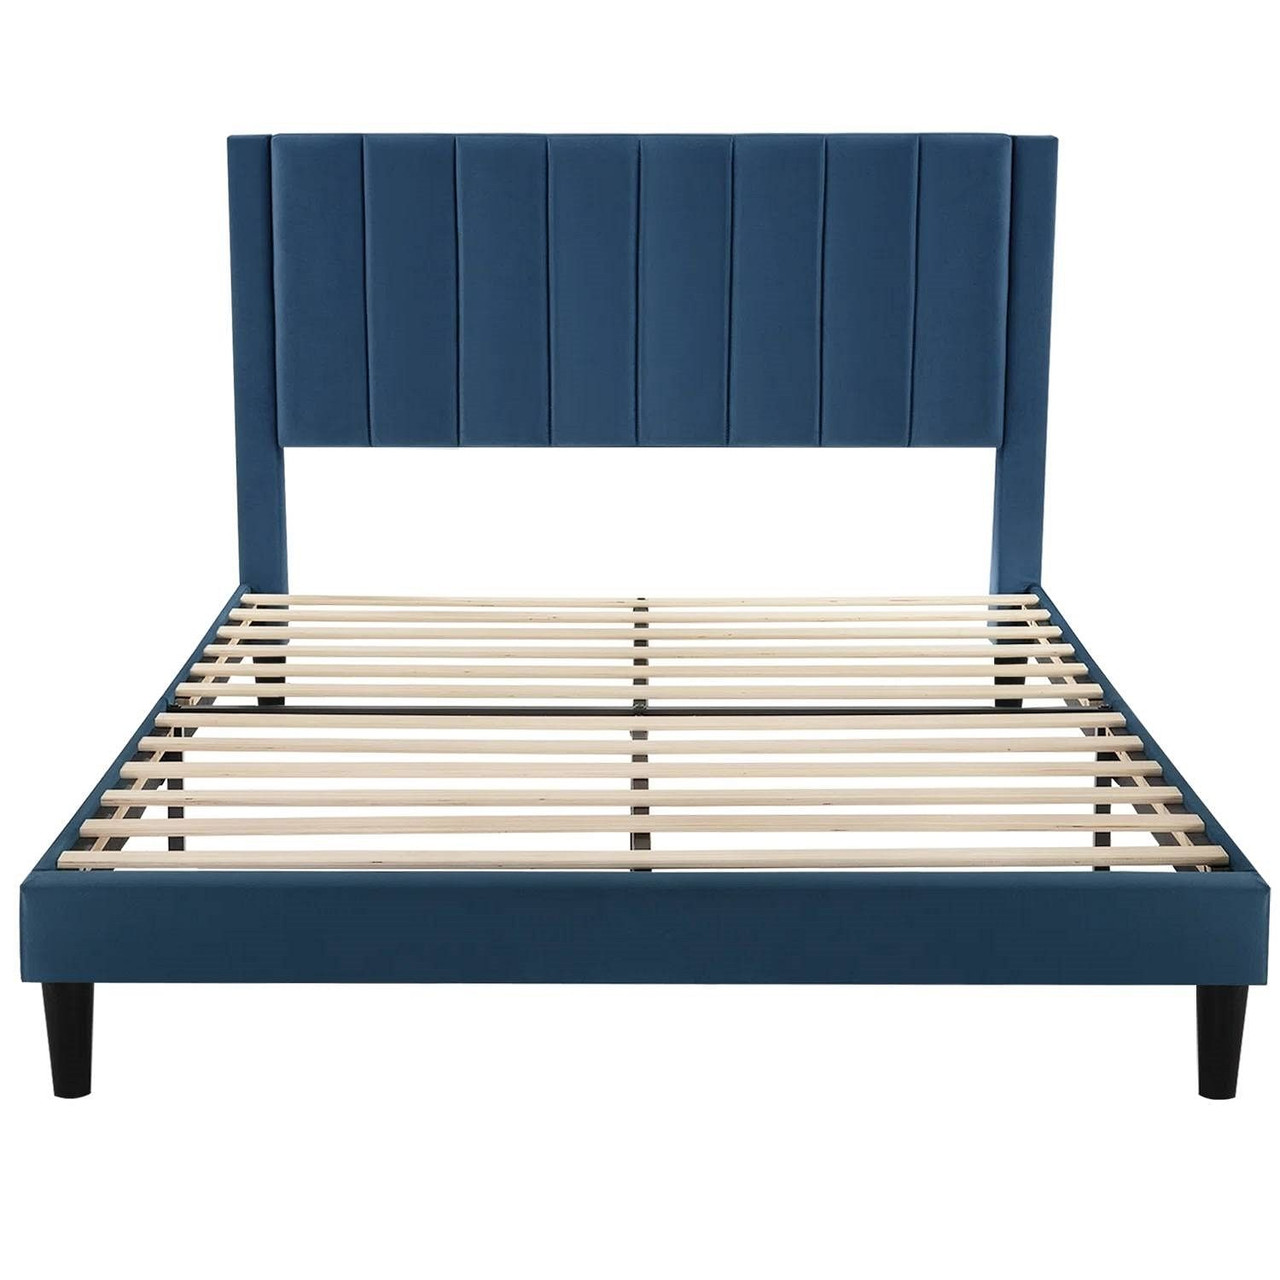 Full size Modern Navy Blue Velvet Upholstered Platform Bed with Headboard